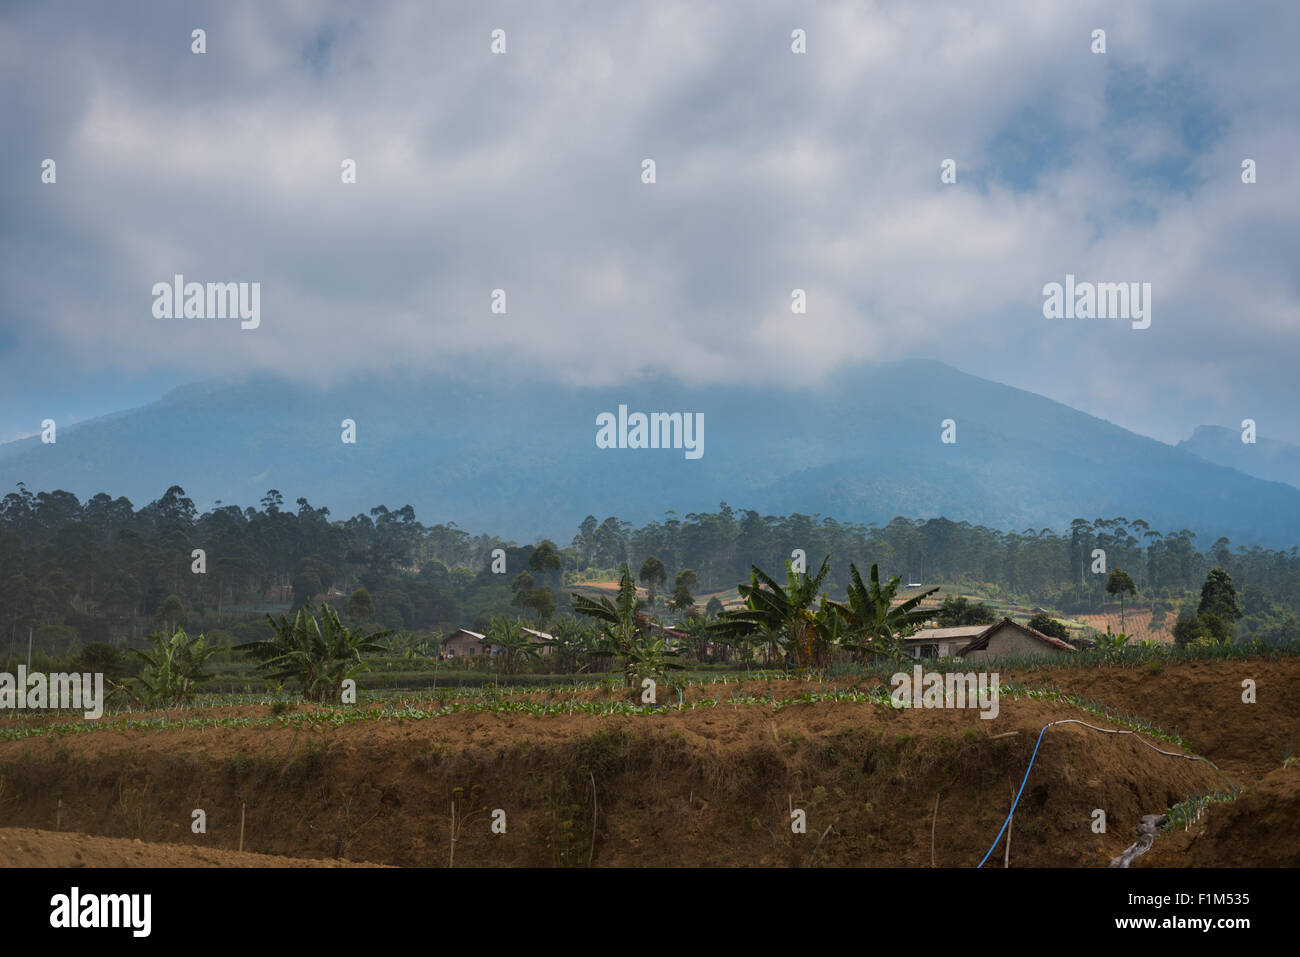 Landwirtschaftliche Landschaft von Sarongge am Fuße des Vulkans Mount Gede, außerhalb des Nationalparks Mount Gede Pangrango, West-Java, Indonesien; in der Trockenzeit. Stockfoto